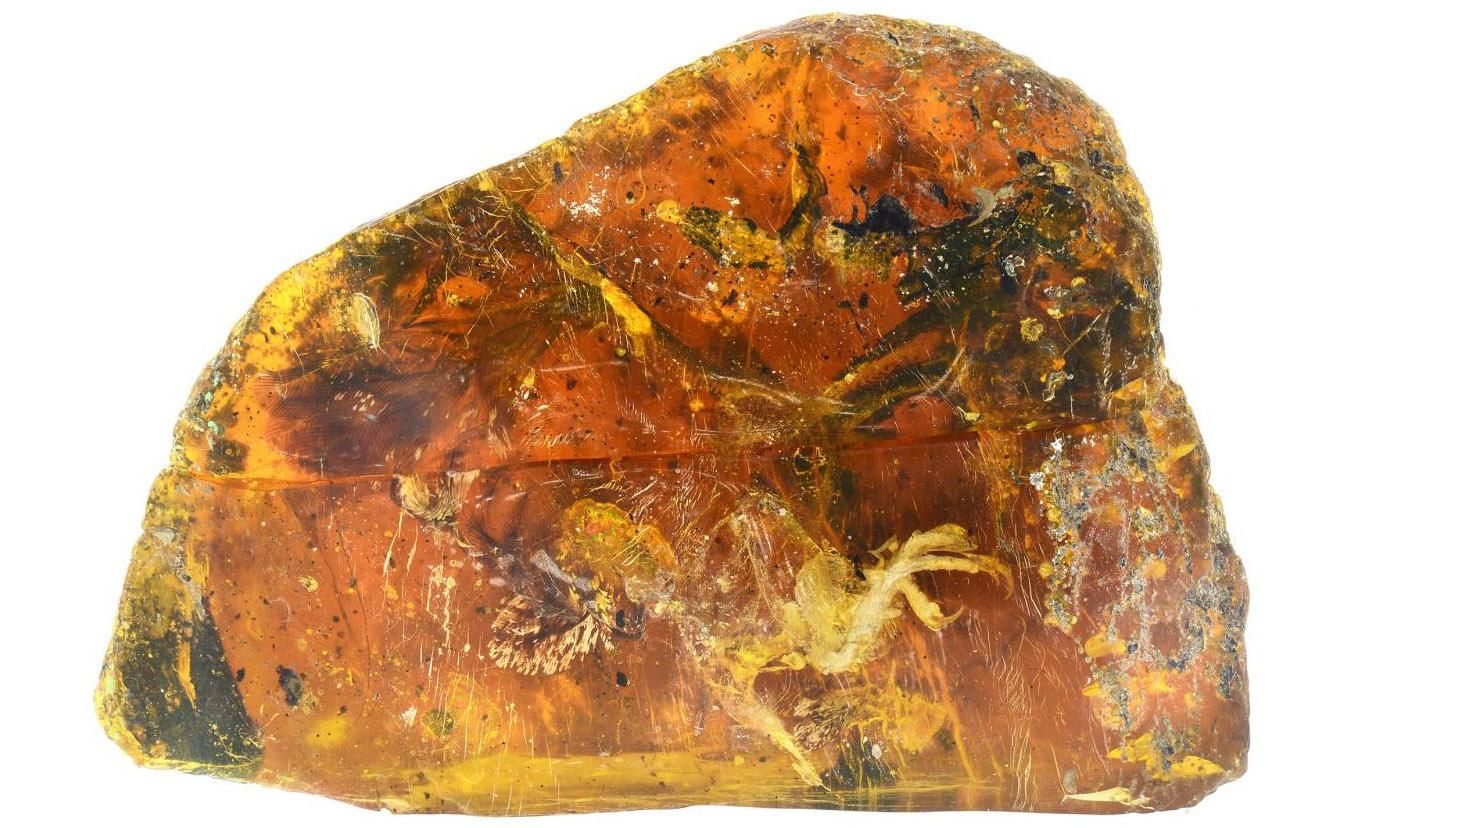 Показали птенчика, который застыл в янтаре 99 миллионов лет назад